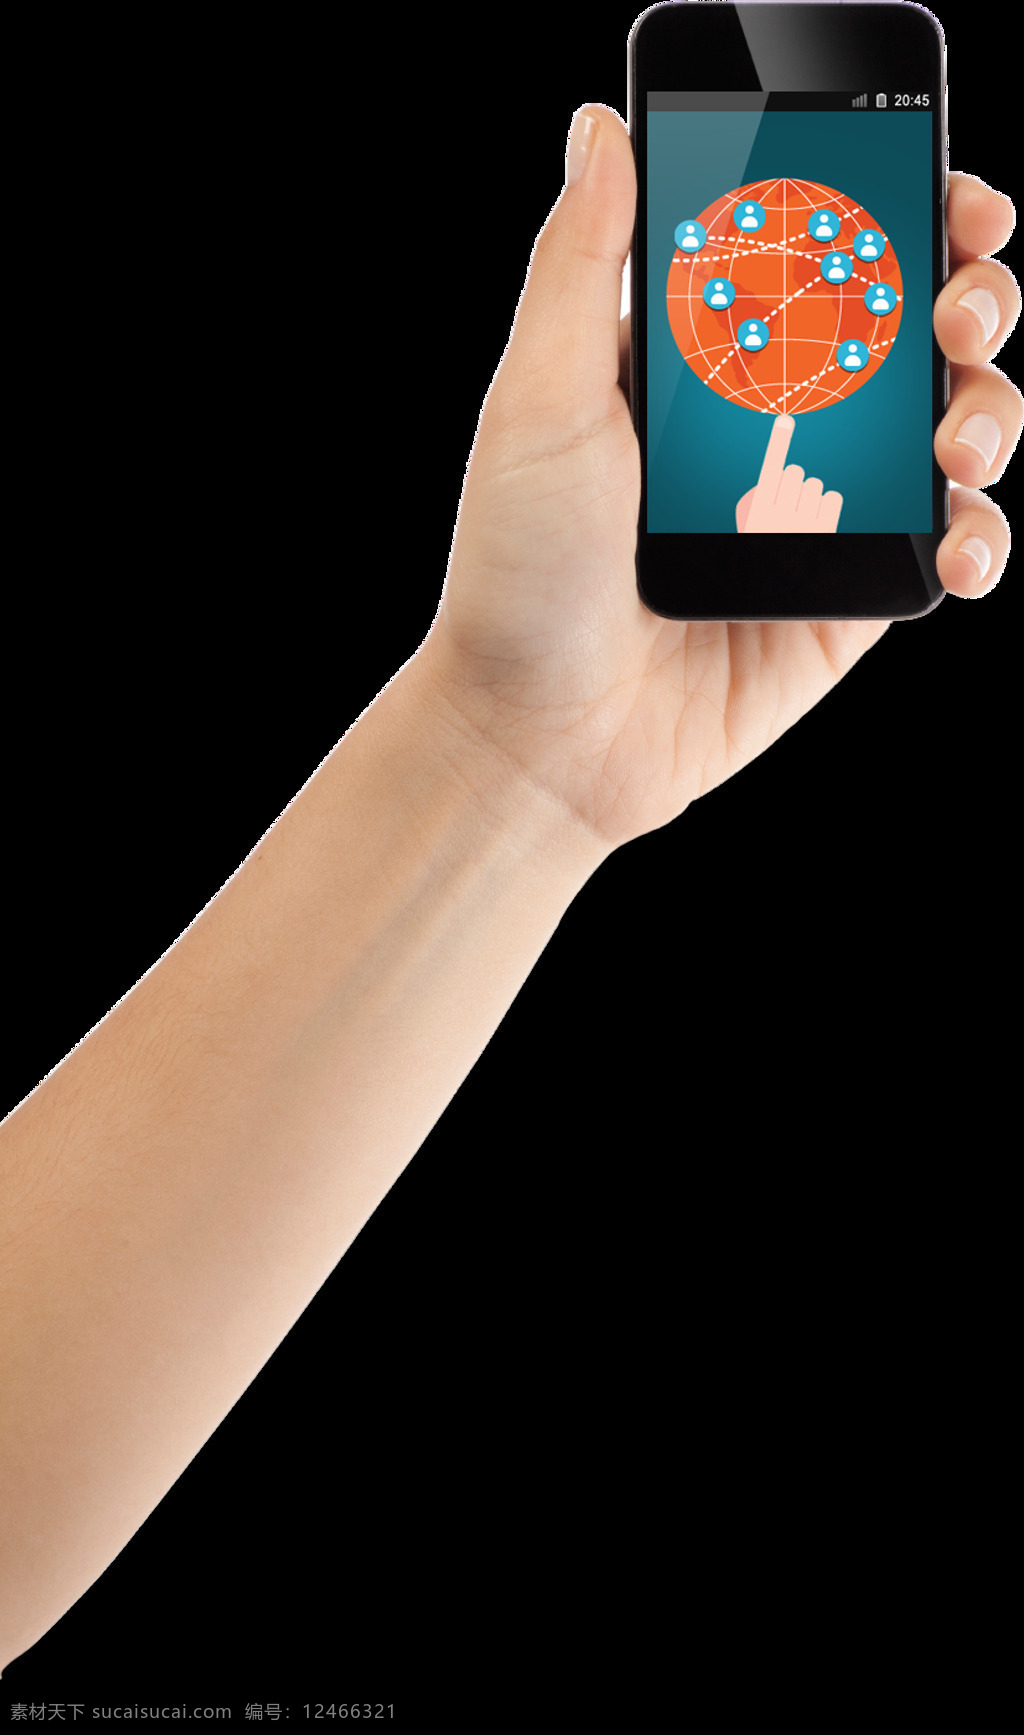 手 智能 手机 图 免 抠 透明 层 手机图片素材 苹果手机图片 4g智能手机 透明智能手机 智能手机样机 智能手机贴图 安卓智能手机 苹果智能手机 安卓手机 苹果手机